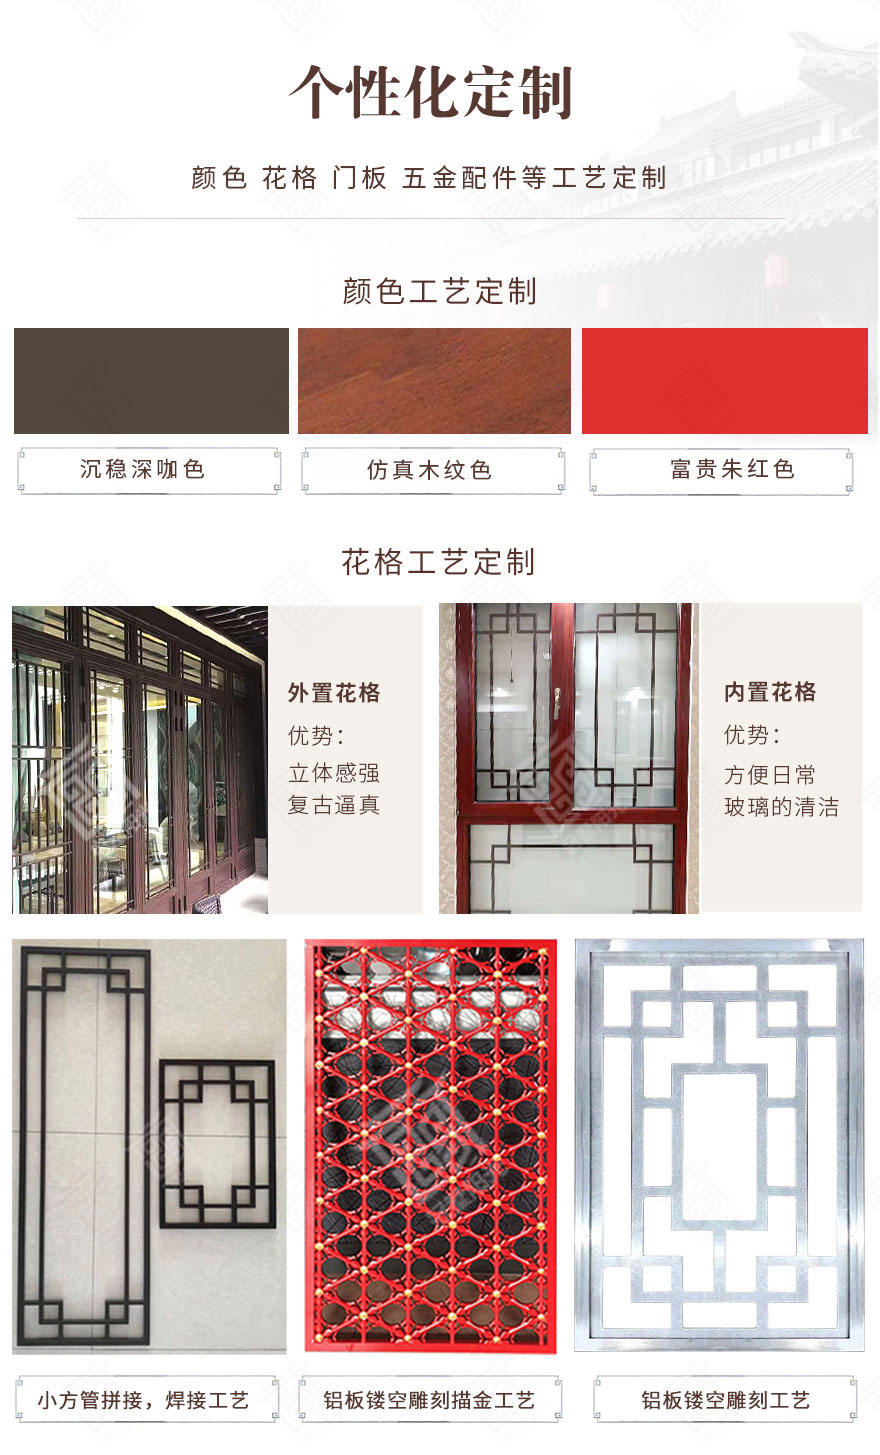 上海仿古门窗工厂-花格-颜色定制.jpg